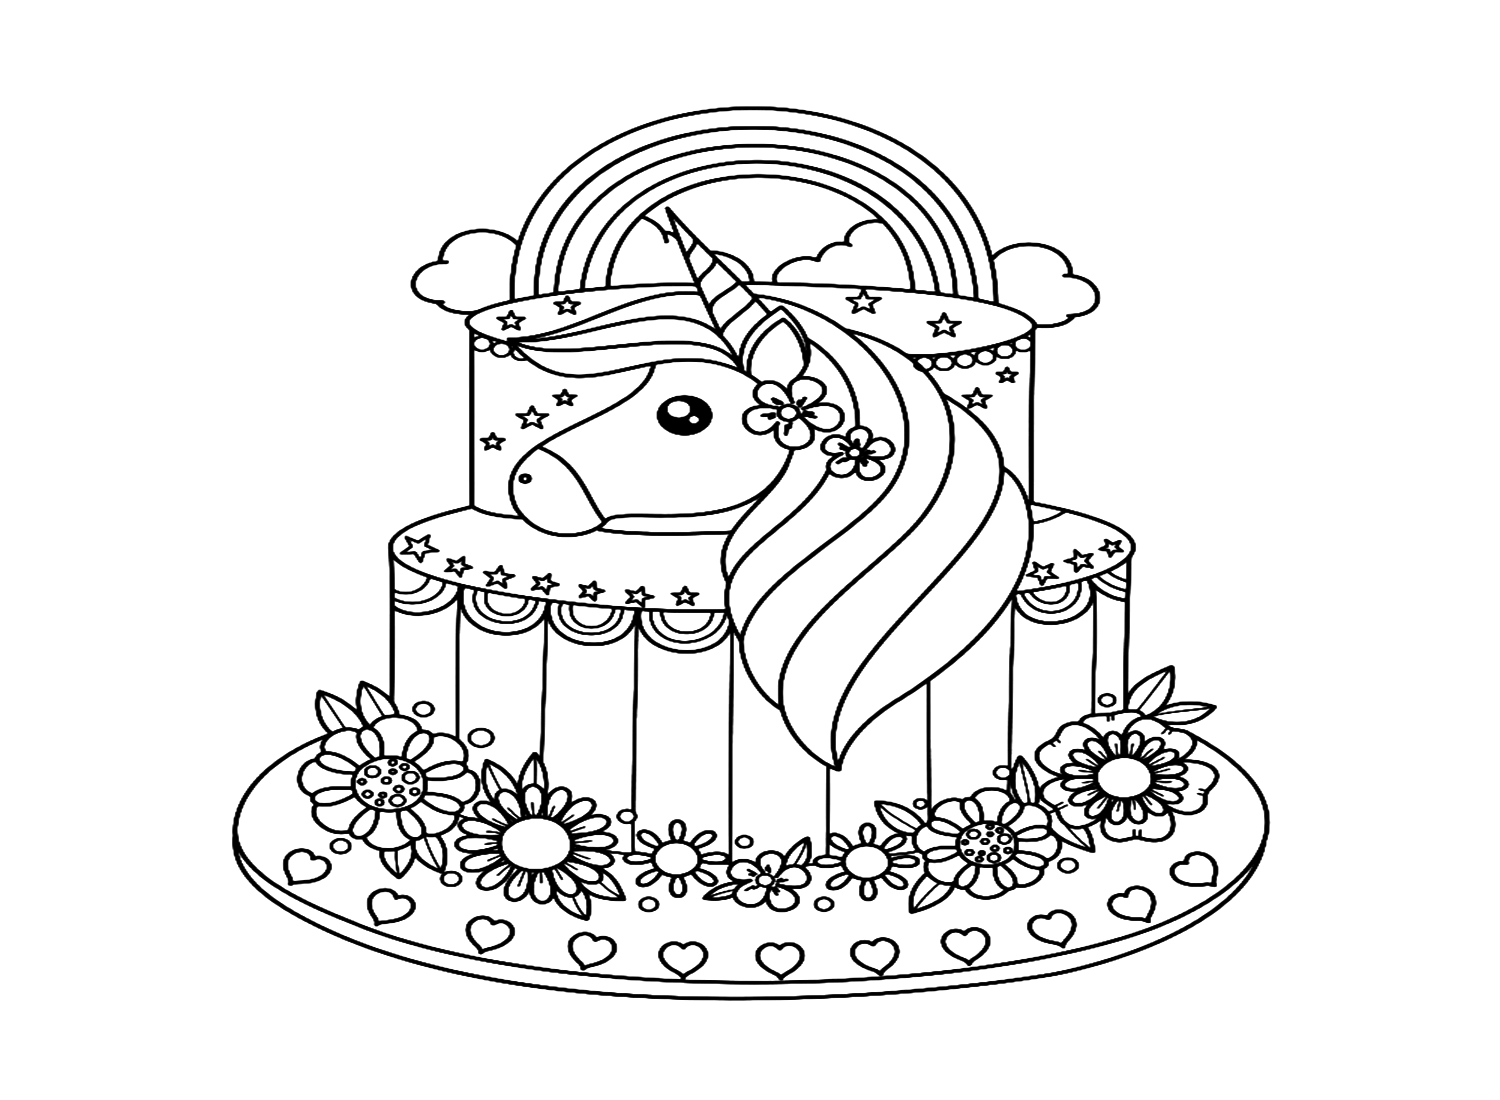 Disegni da colorare di torta di unicorno